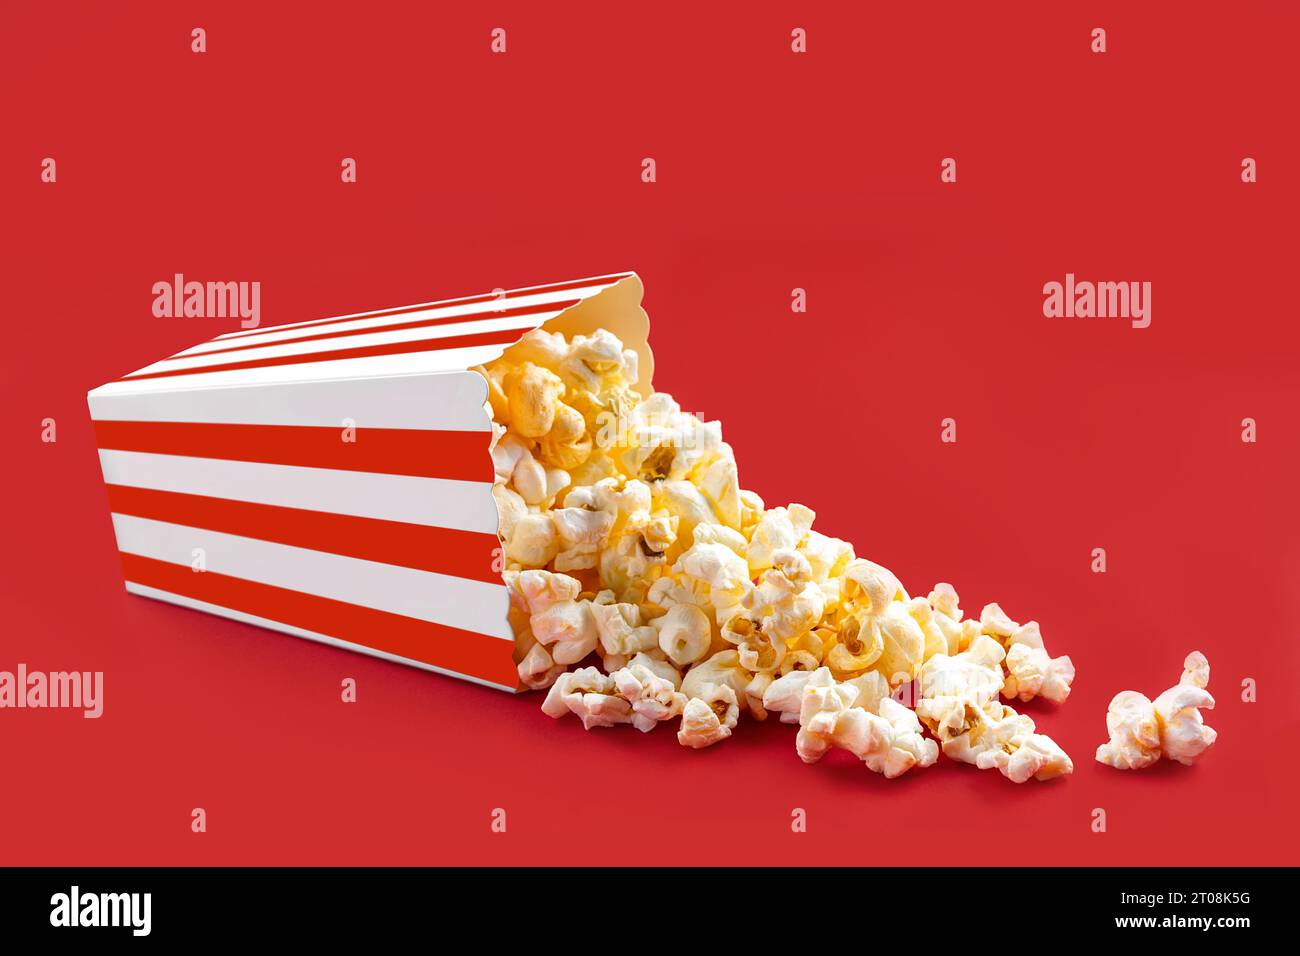 Gustosi popcorn al formaggio che cadono da una scatola di cartone a righe rosse o da un secchio, isolato su sfondo rosso. Dispersione di semi di popcorn. Fast food, snack. Mo Foto Stock